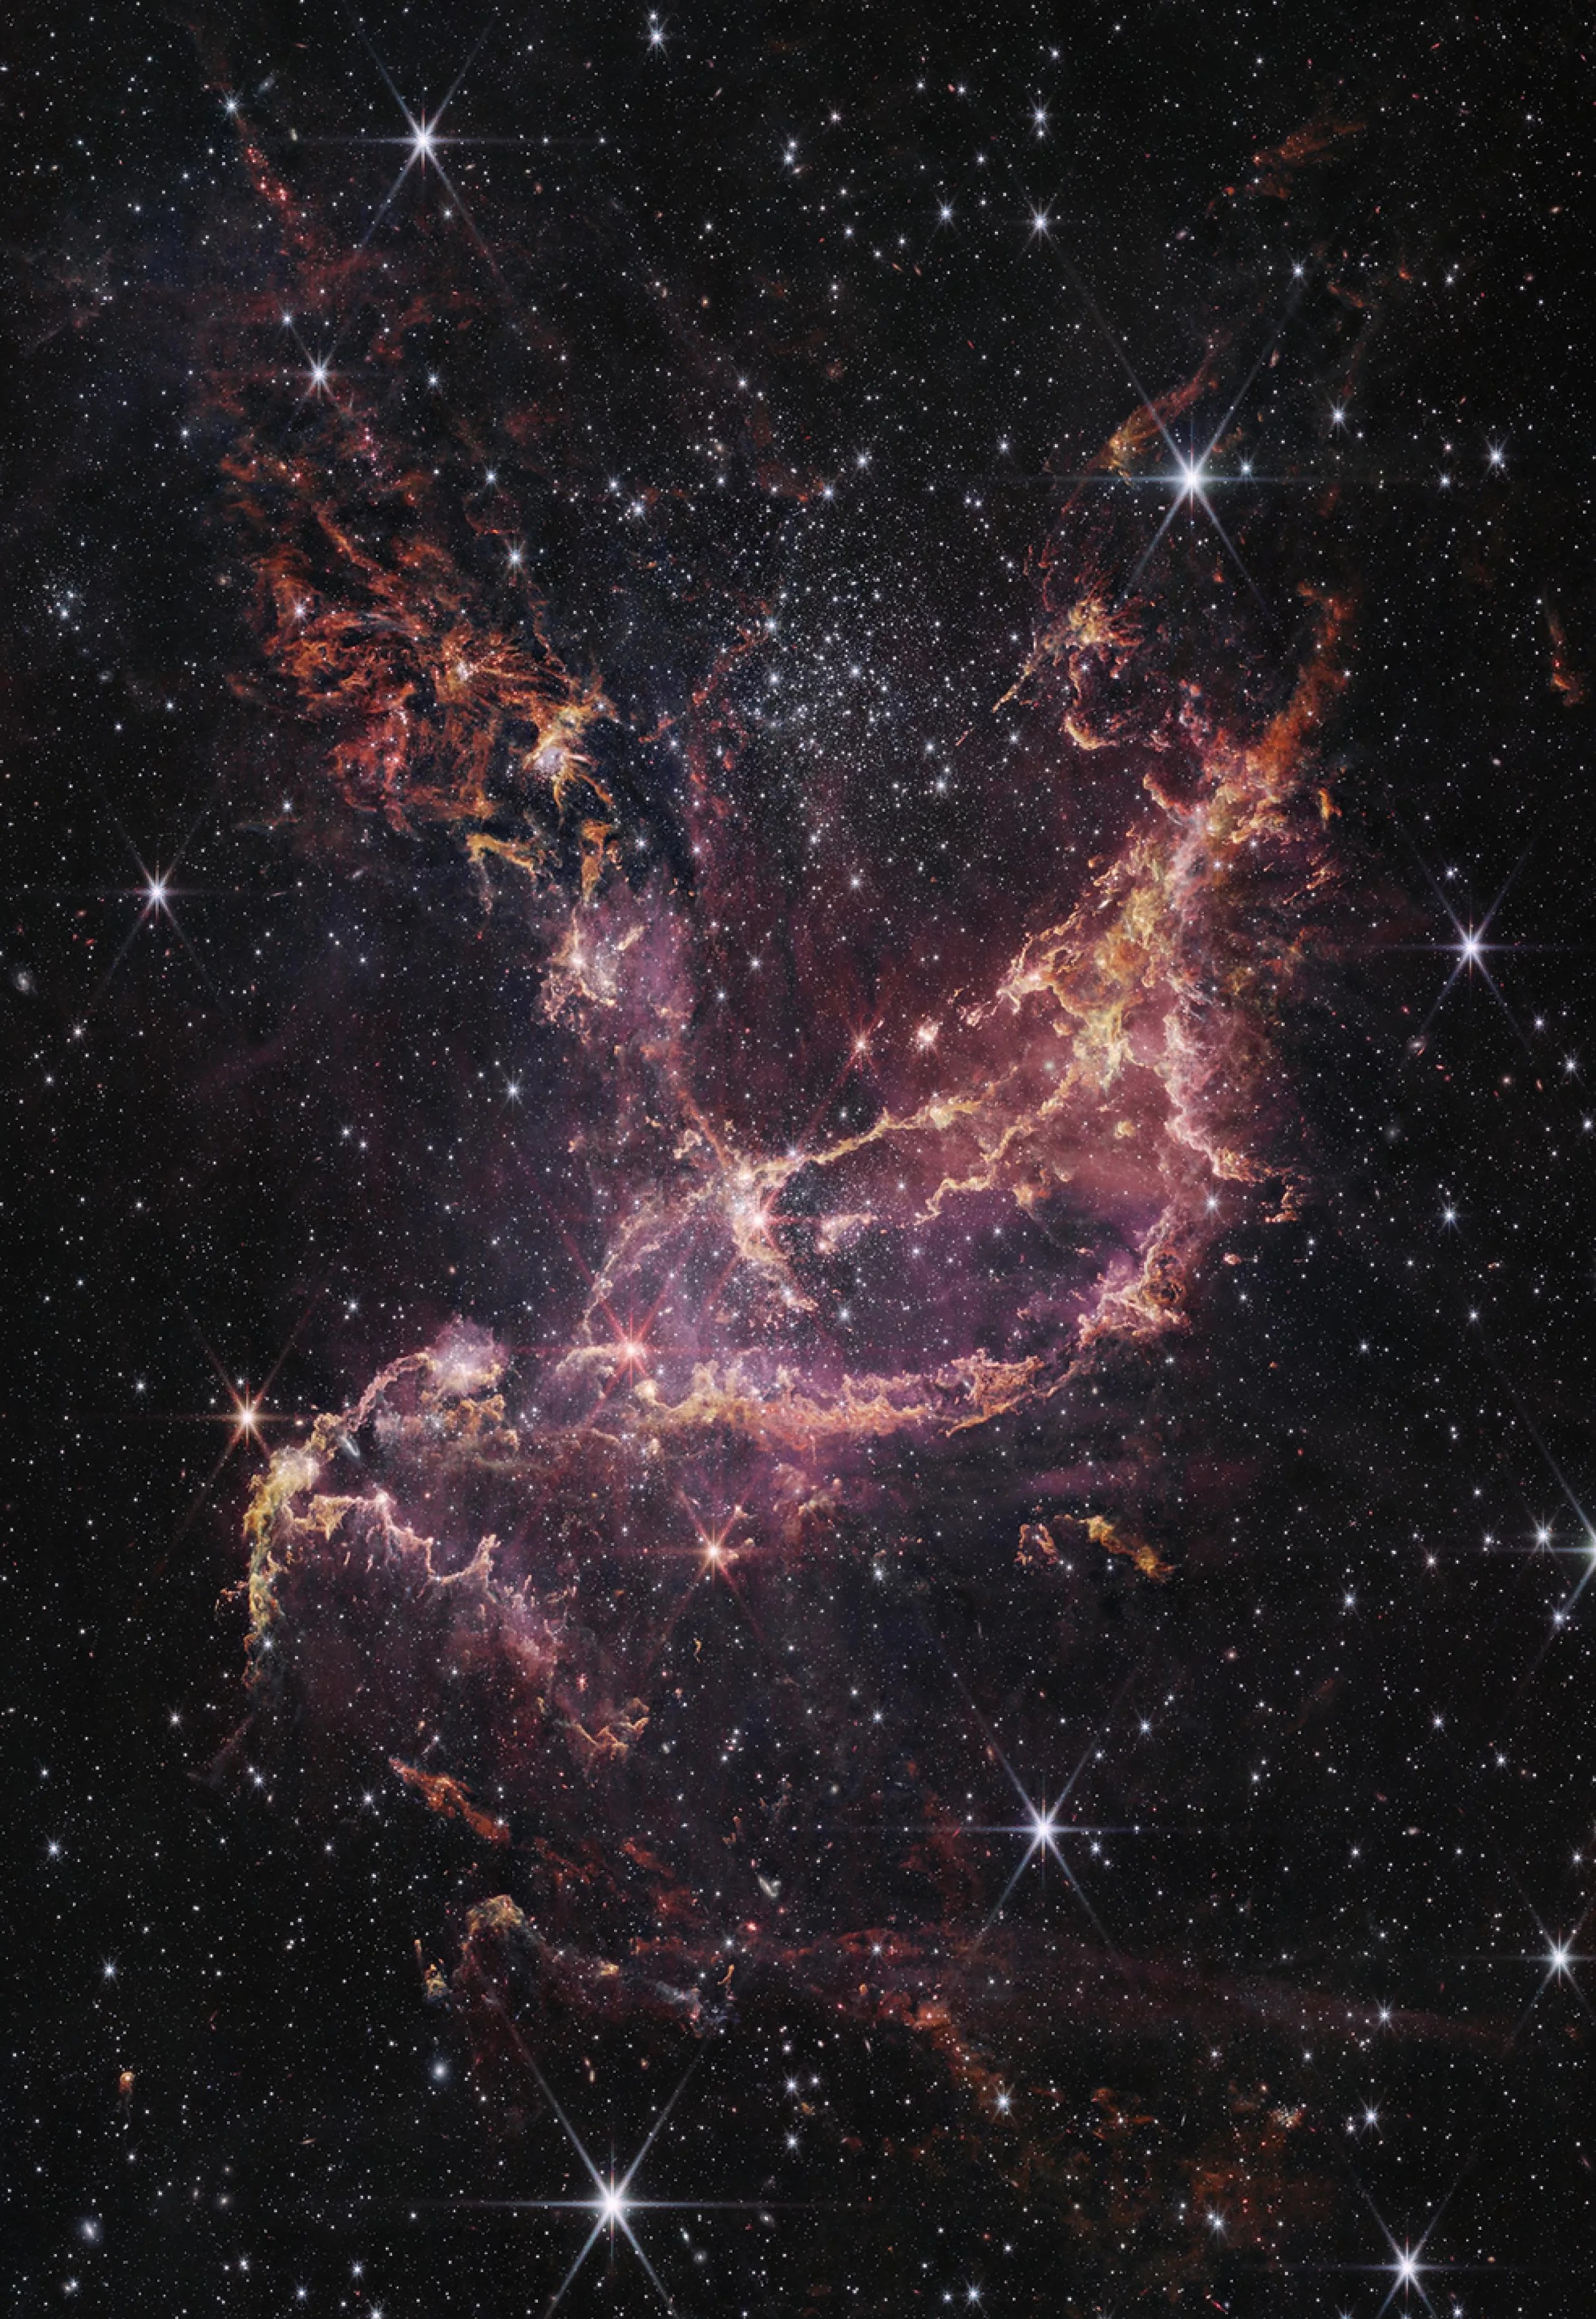 Un cúmulo estelar dentro de una nebulosa. El centro de la imagen contiene arcos de gas naranja y rosado que crean una figura en forma de bote. Uno de los extremos de estos arcos a la parte superior derecha de la imagen, mientras que el otro extremo apunta hacia la parte inferior izquierda. Otra columna de gas naranja y rosado se expande desde del centro hasta la parte superior izquierda de la imagen. A la derecha de este penacho hay un gran cúmulo de estrellas blancas. Hay más de estas estrellas blancas y g